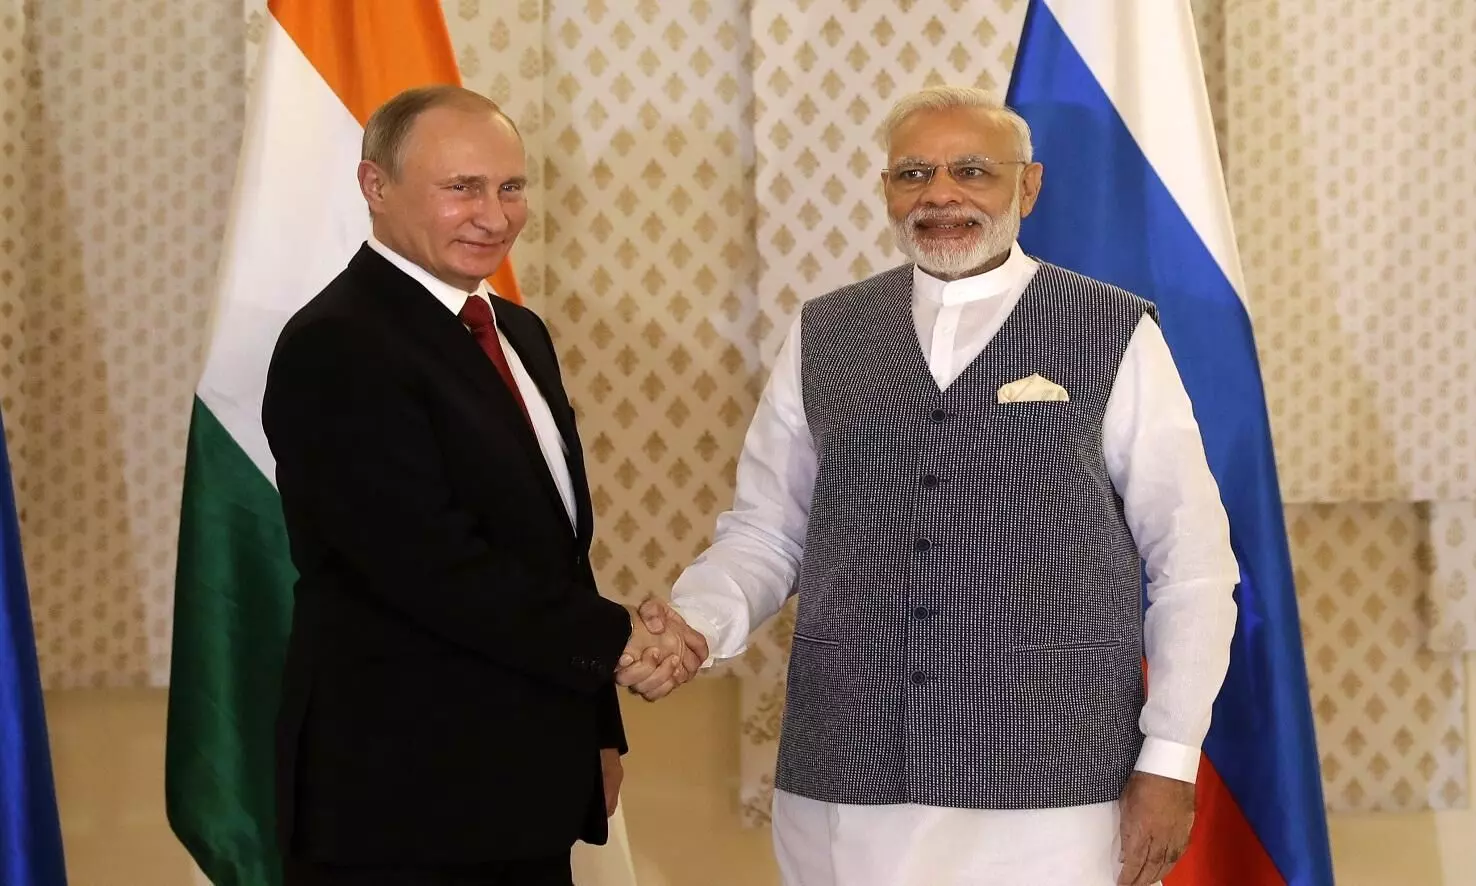 भारत और रूस के सम्बन्ध अच्छे रहे हैं